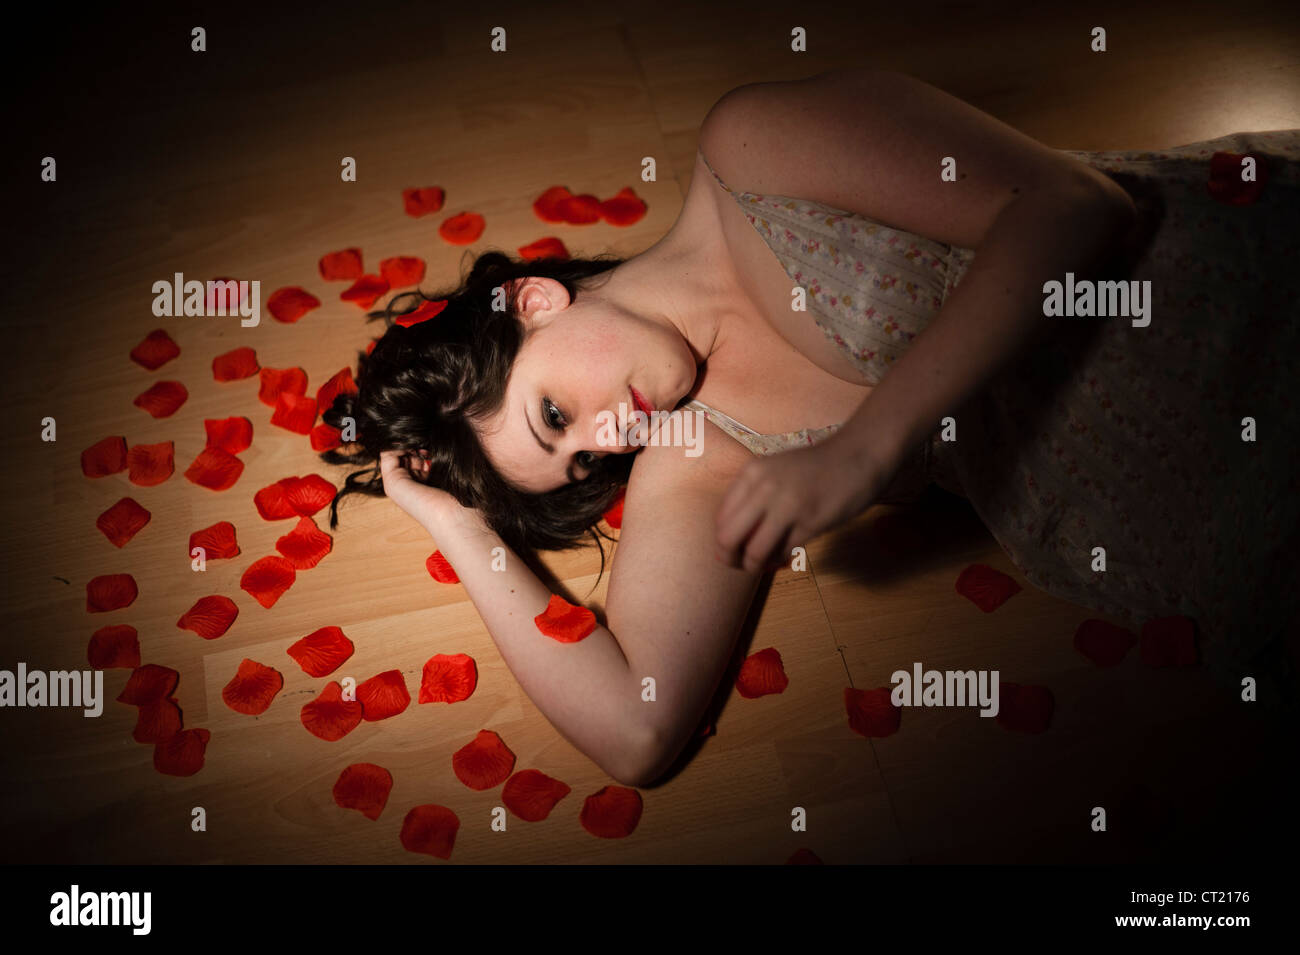 Une jeune femme fille seul couché sur la dispersion des pétales rouges sur un sol en bois Banque D'Images